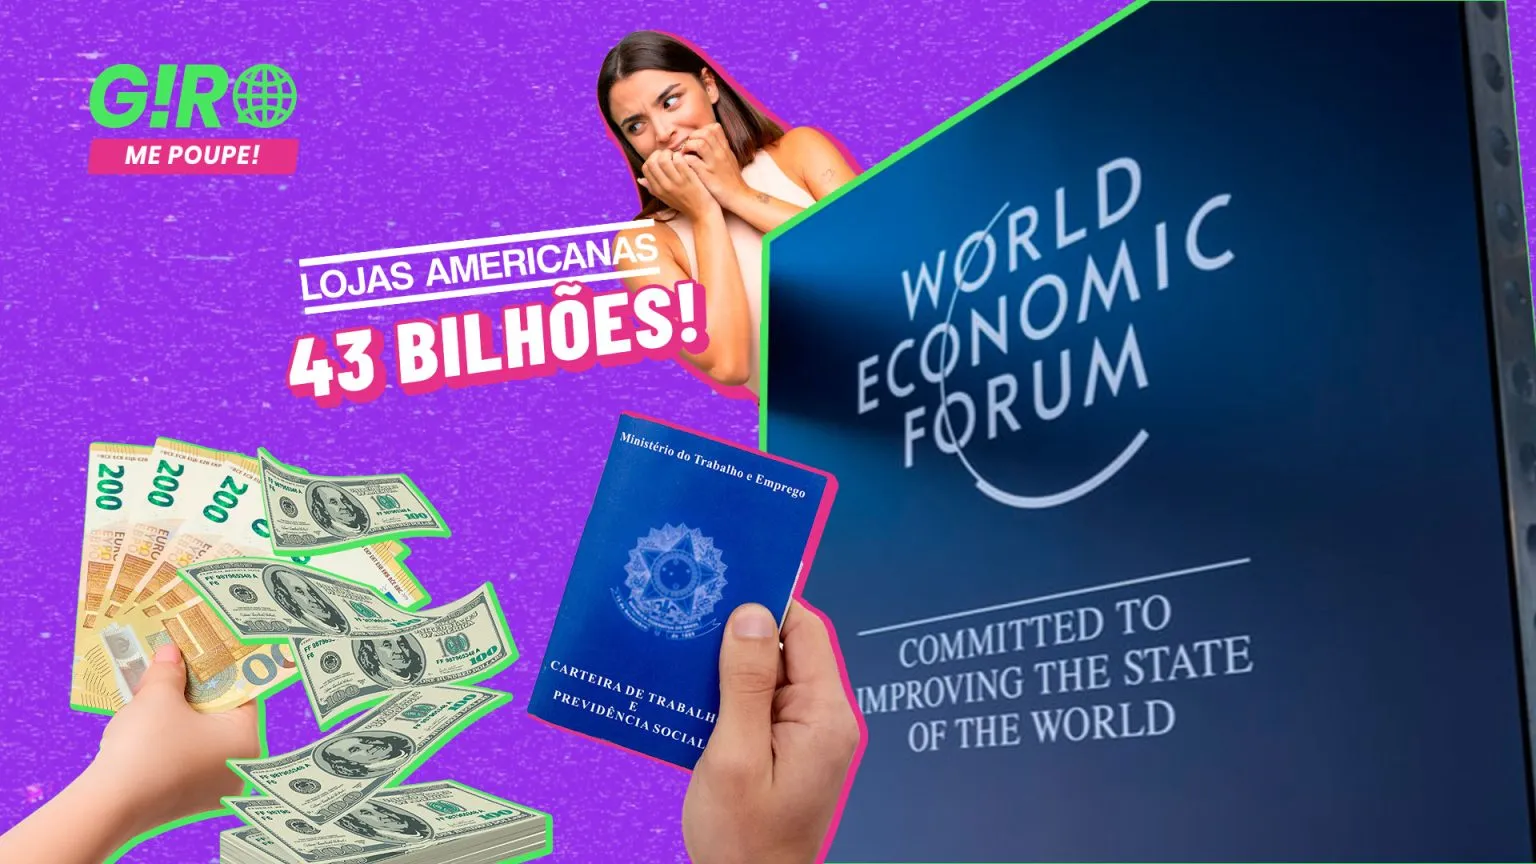 Giro Me Poupe! | Fórum Econômico Mundial: como o Brasil se saiu lá fora?